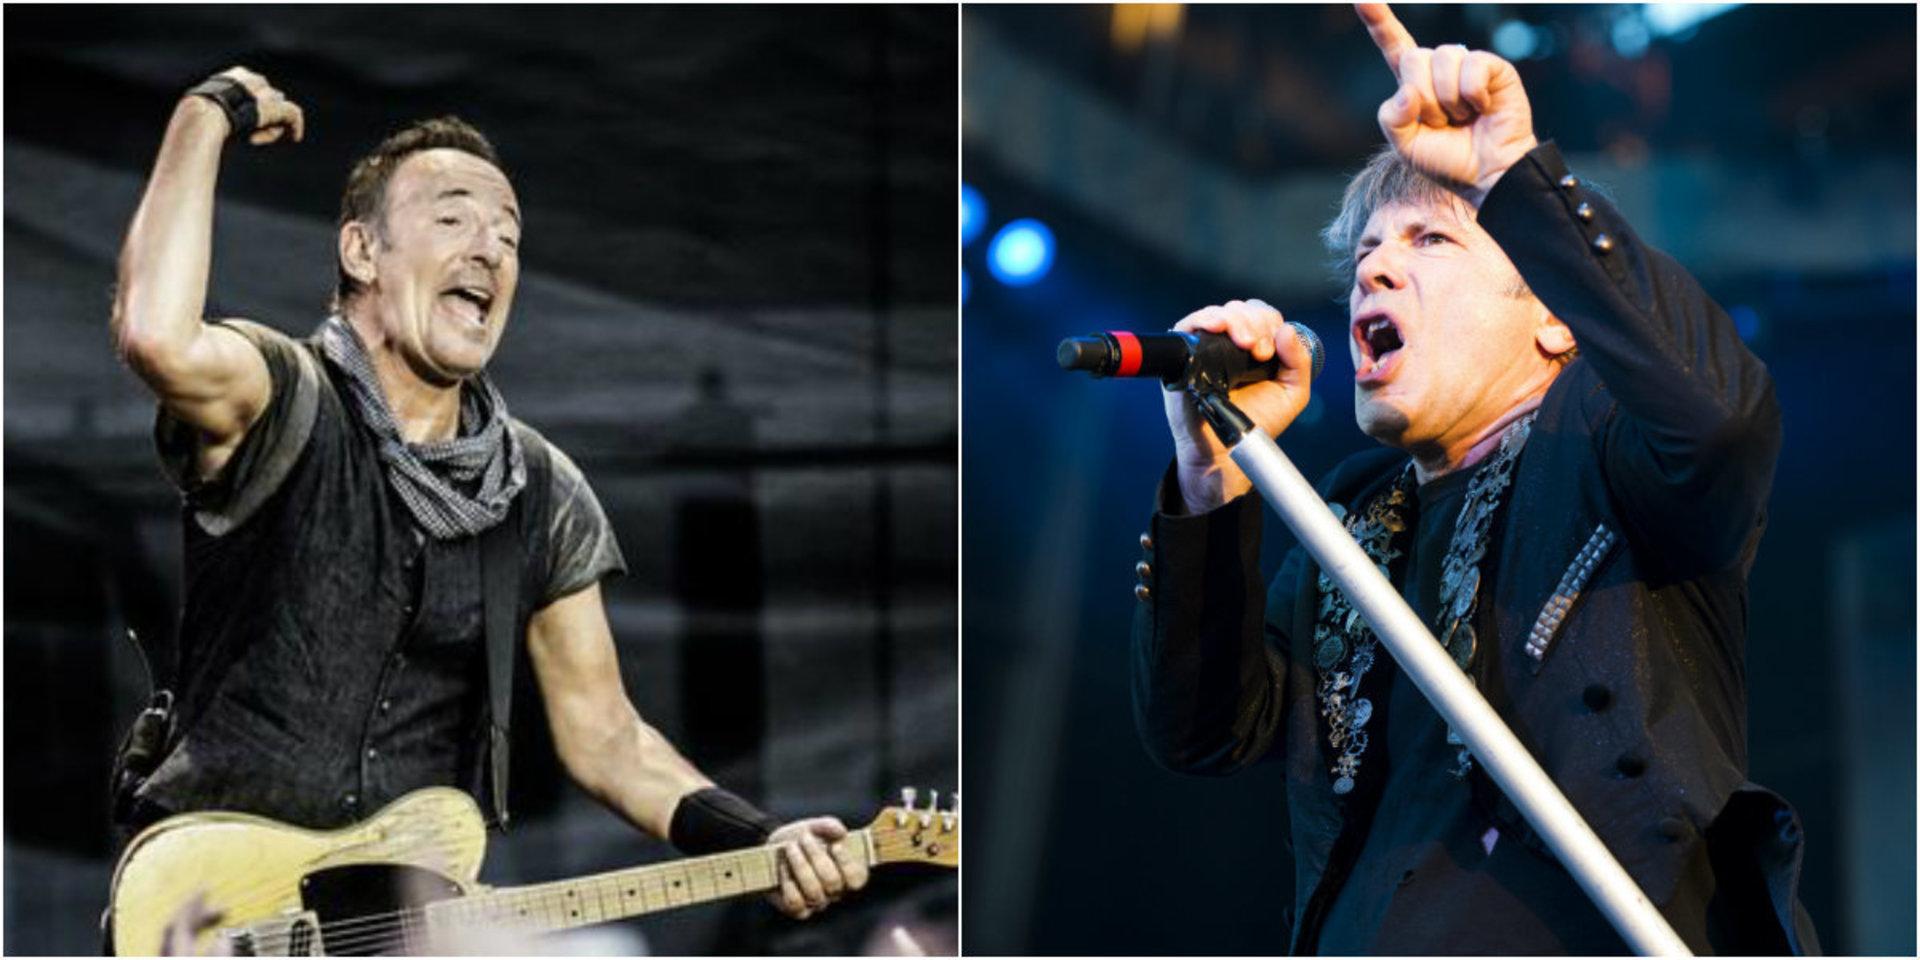 Bruce eller Bruce? Ullevi är bokat för ytterligare konserter 2020. Både Springsteen och Iron Maiden har turnéer på gång.